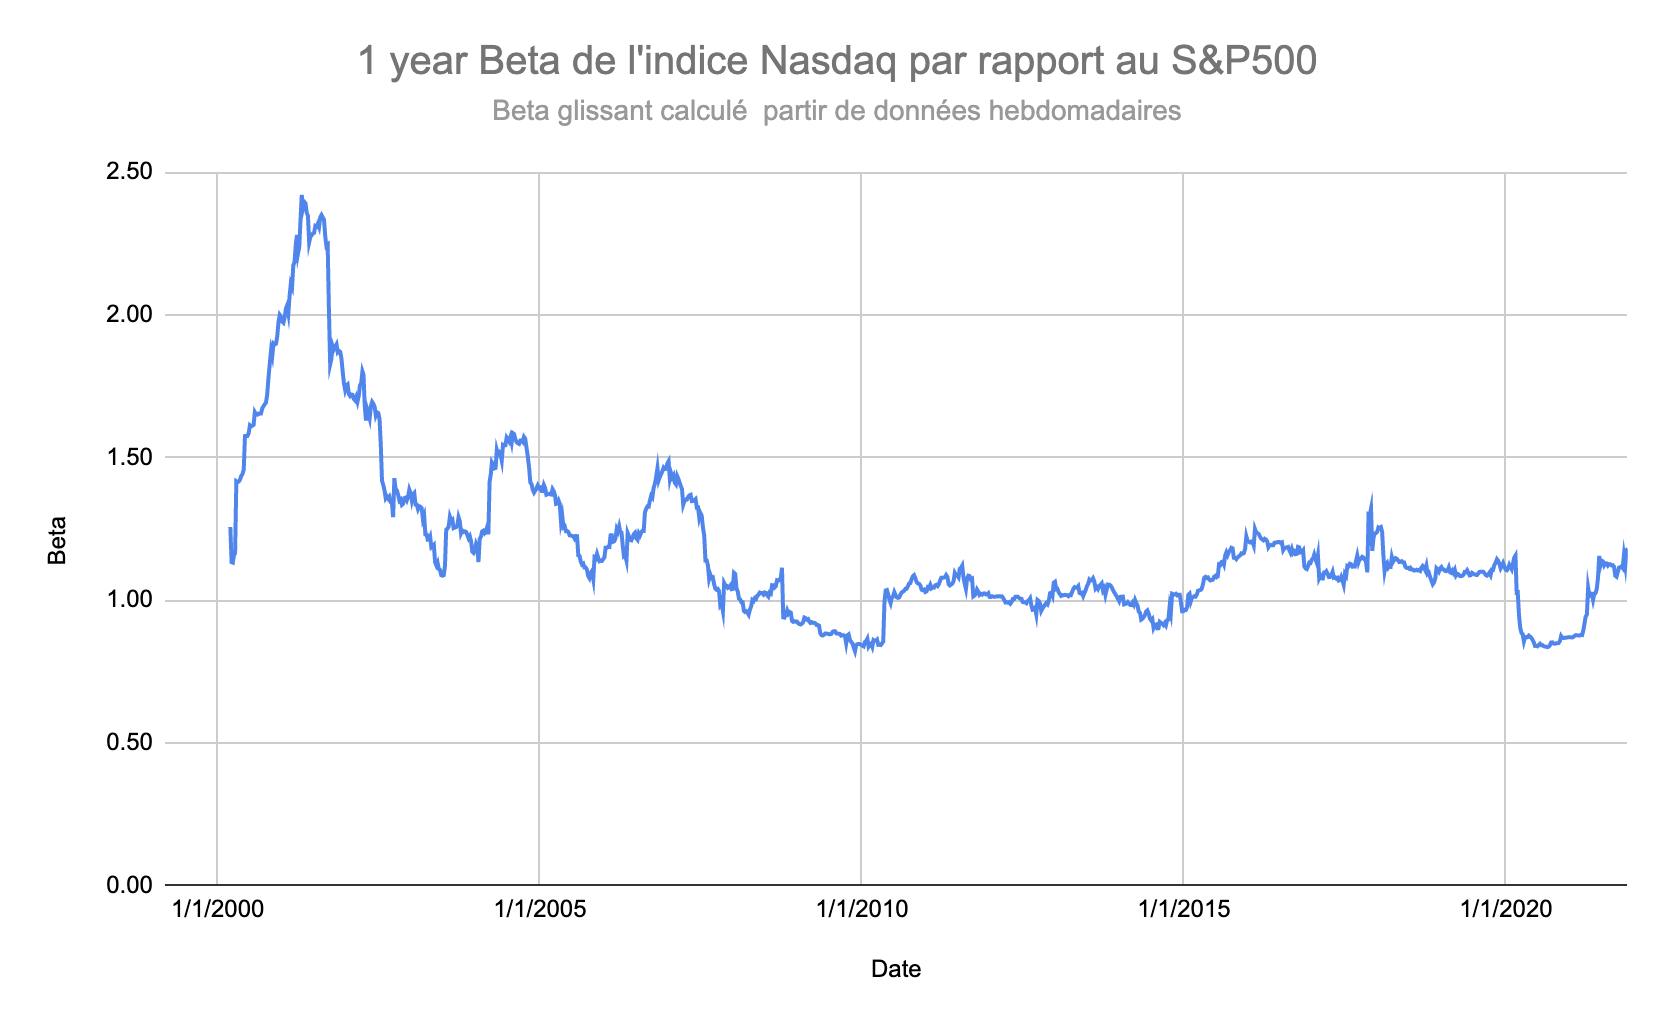 Nasdaq 100 Beta vs SP 500